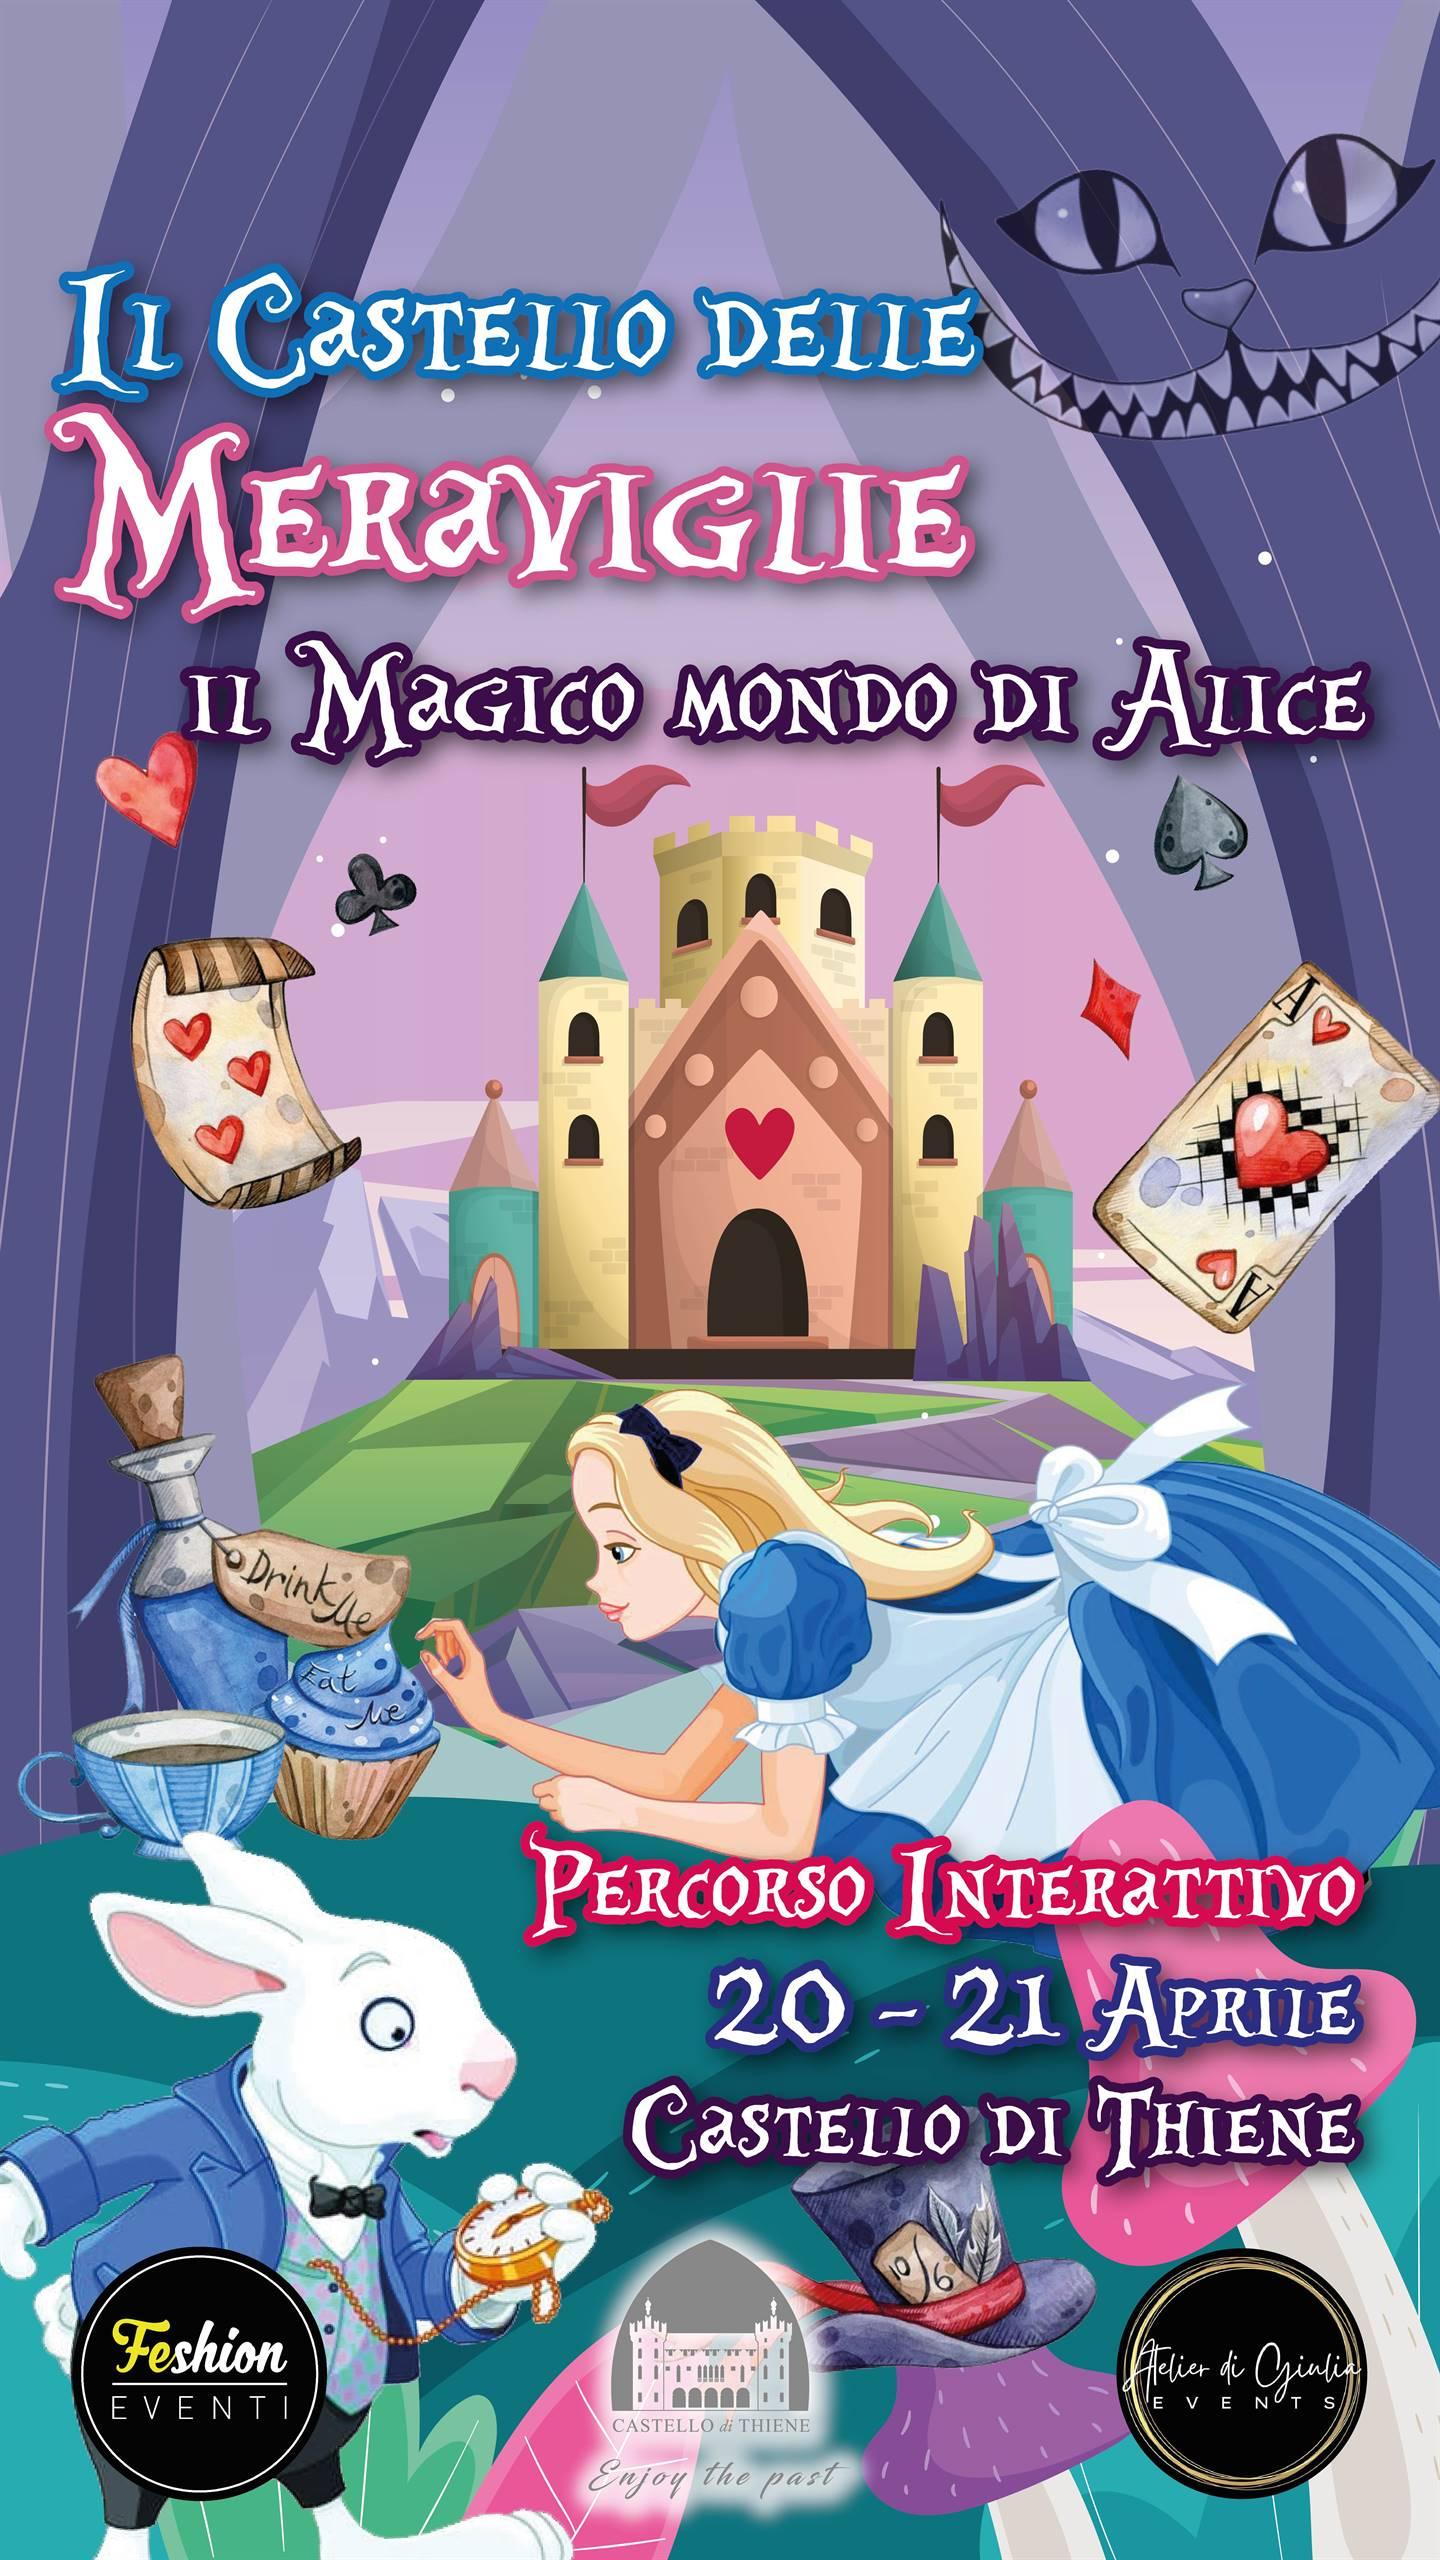 Il Castello delle Meraviglie: il Magico Mondo di Alice 